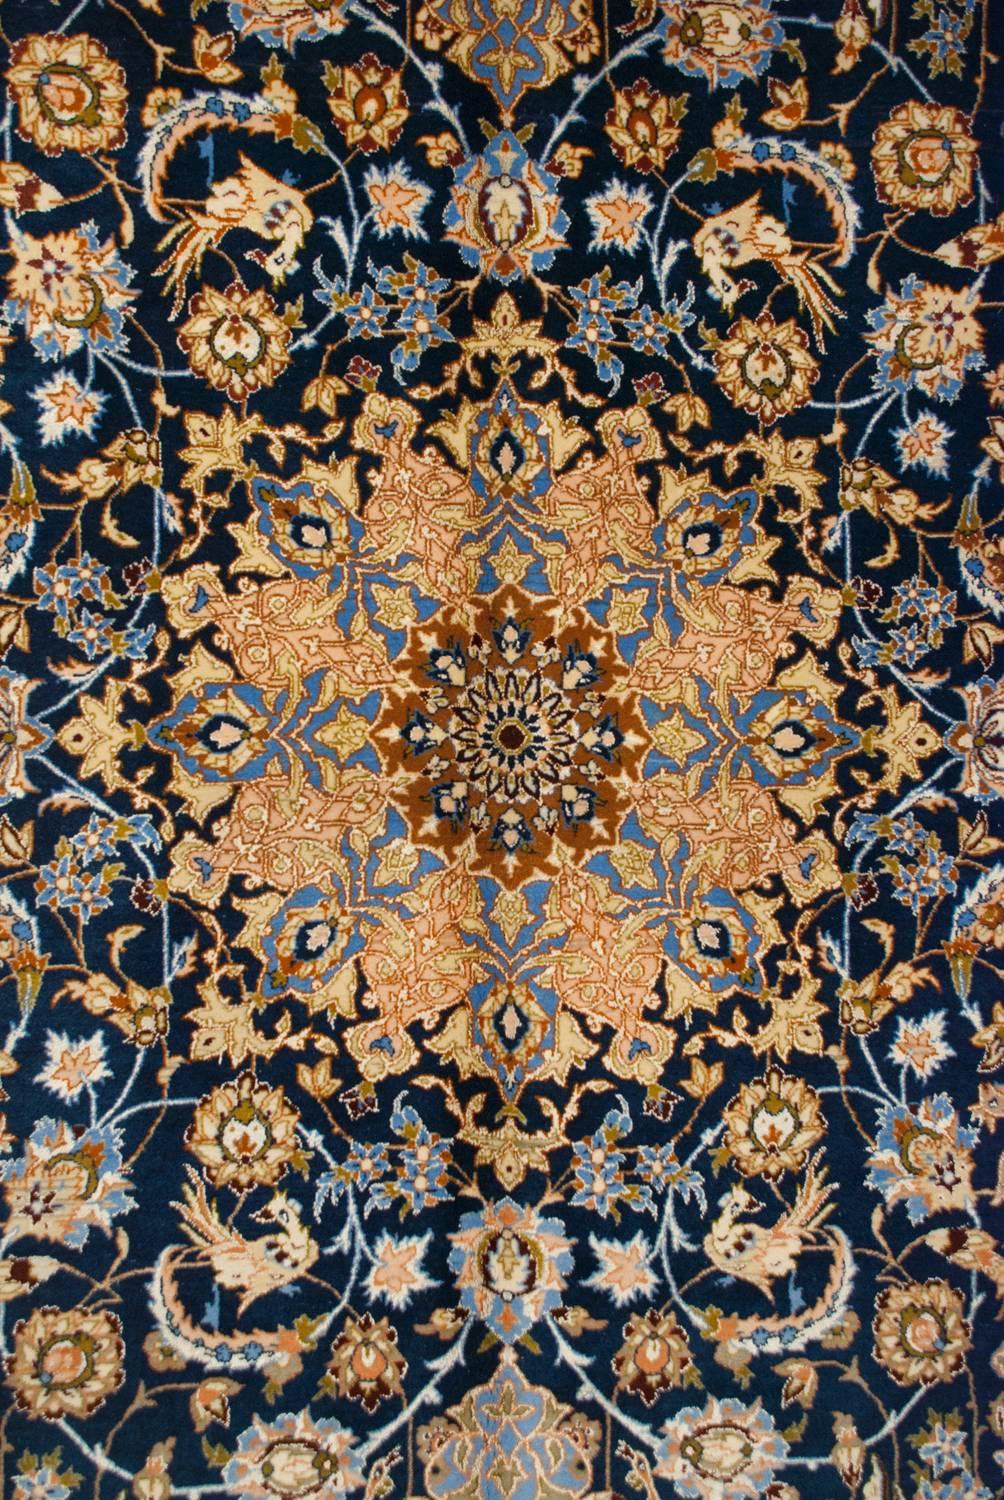 Ein wundervoller, skurriler persischer Isfahan-Teppich aus dem frühen 20. Jahrhundert mit einem faszinierenden, eng gewebten Muster aus bunten Blumen und Ranken auf einem satten indigoblauen Hintergrund. Inmitten des Blumenmusters sind unzählige